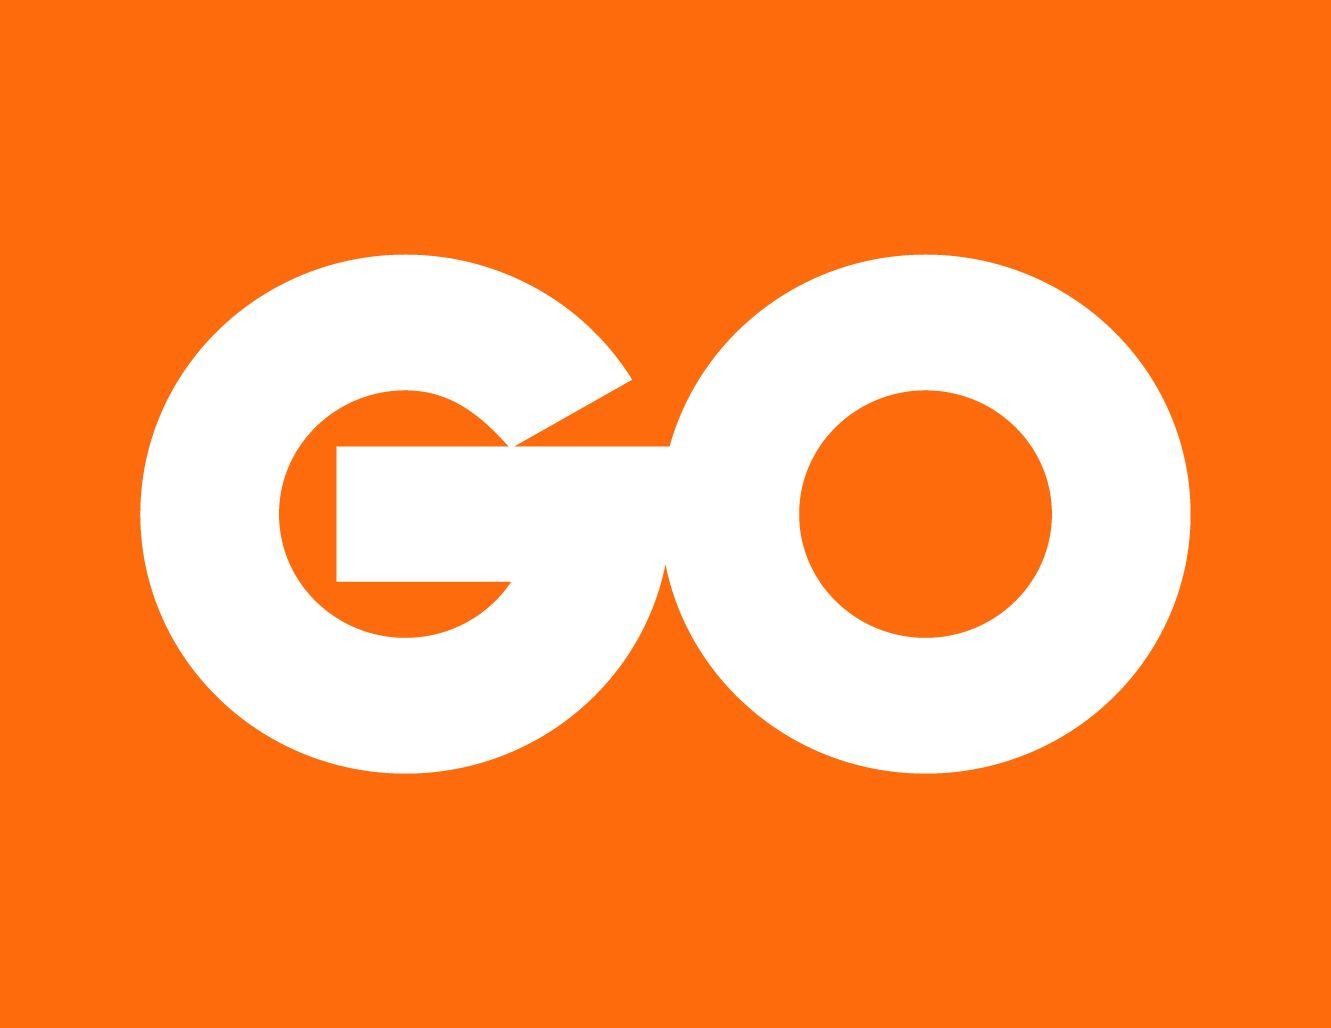 Go Logo - Press Kit